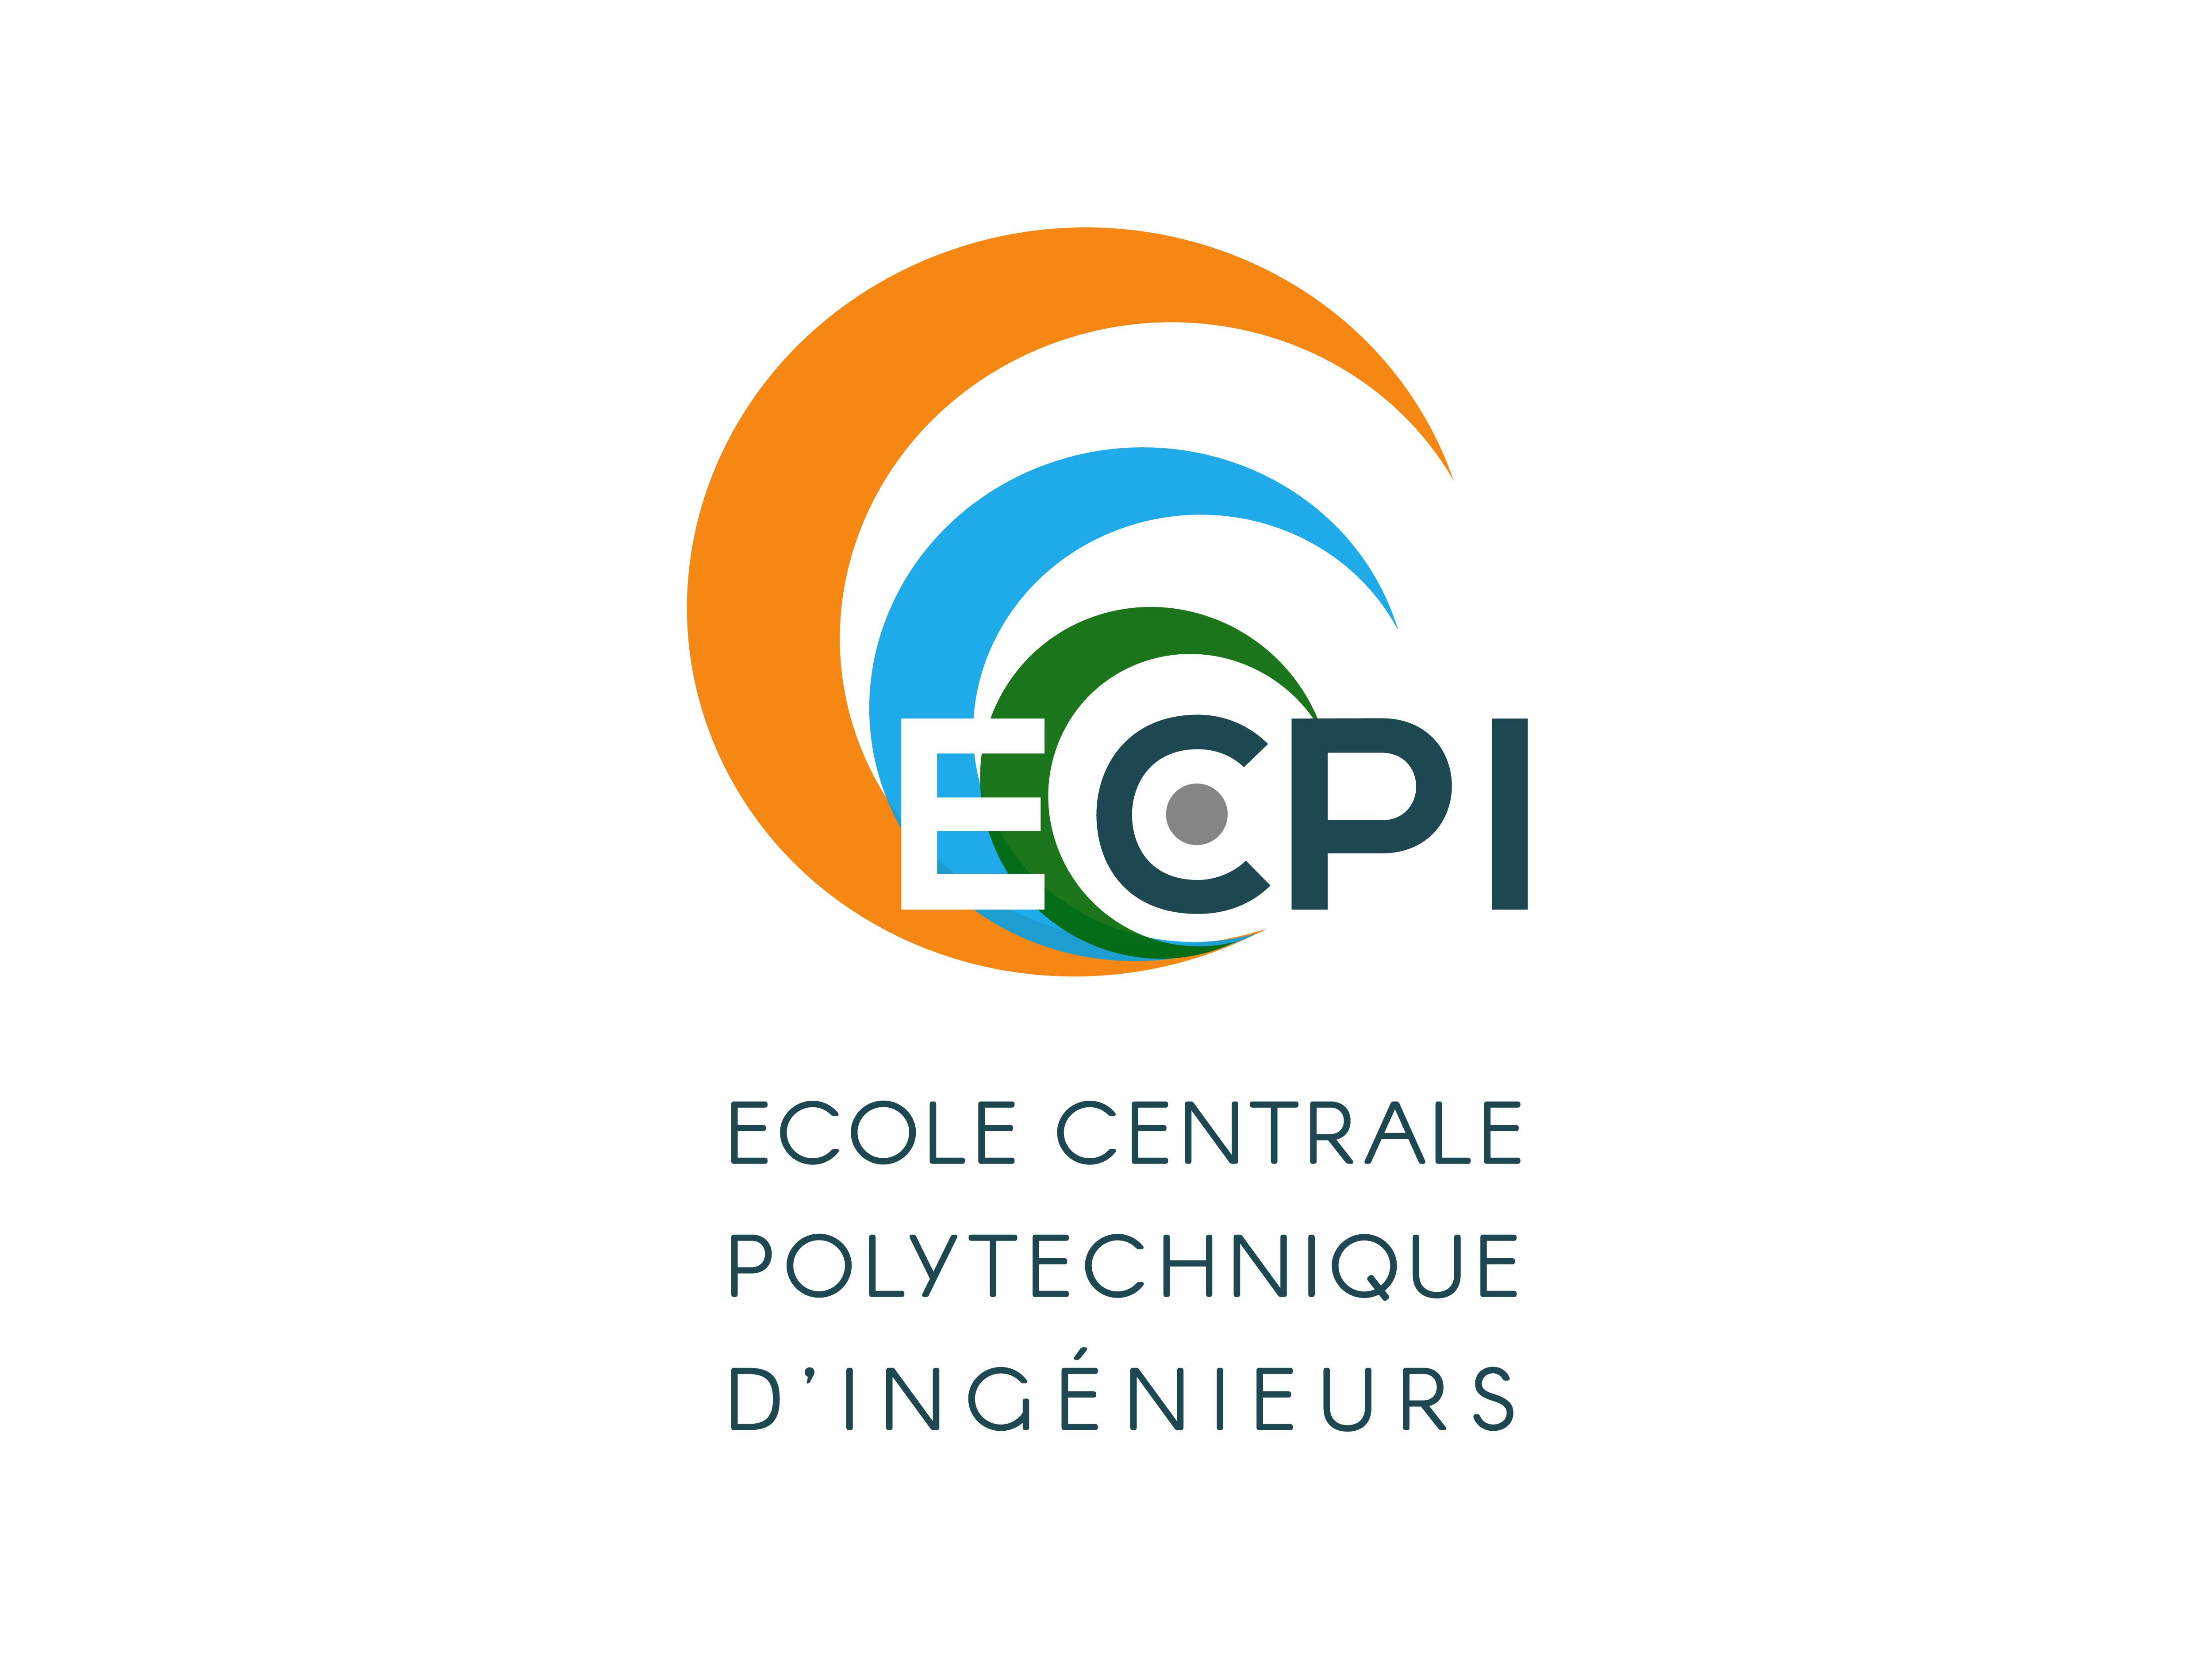 Ecole Centrale Polytechnique d’Ingénieurs (ECPI)